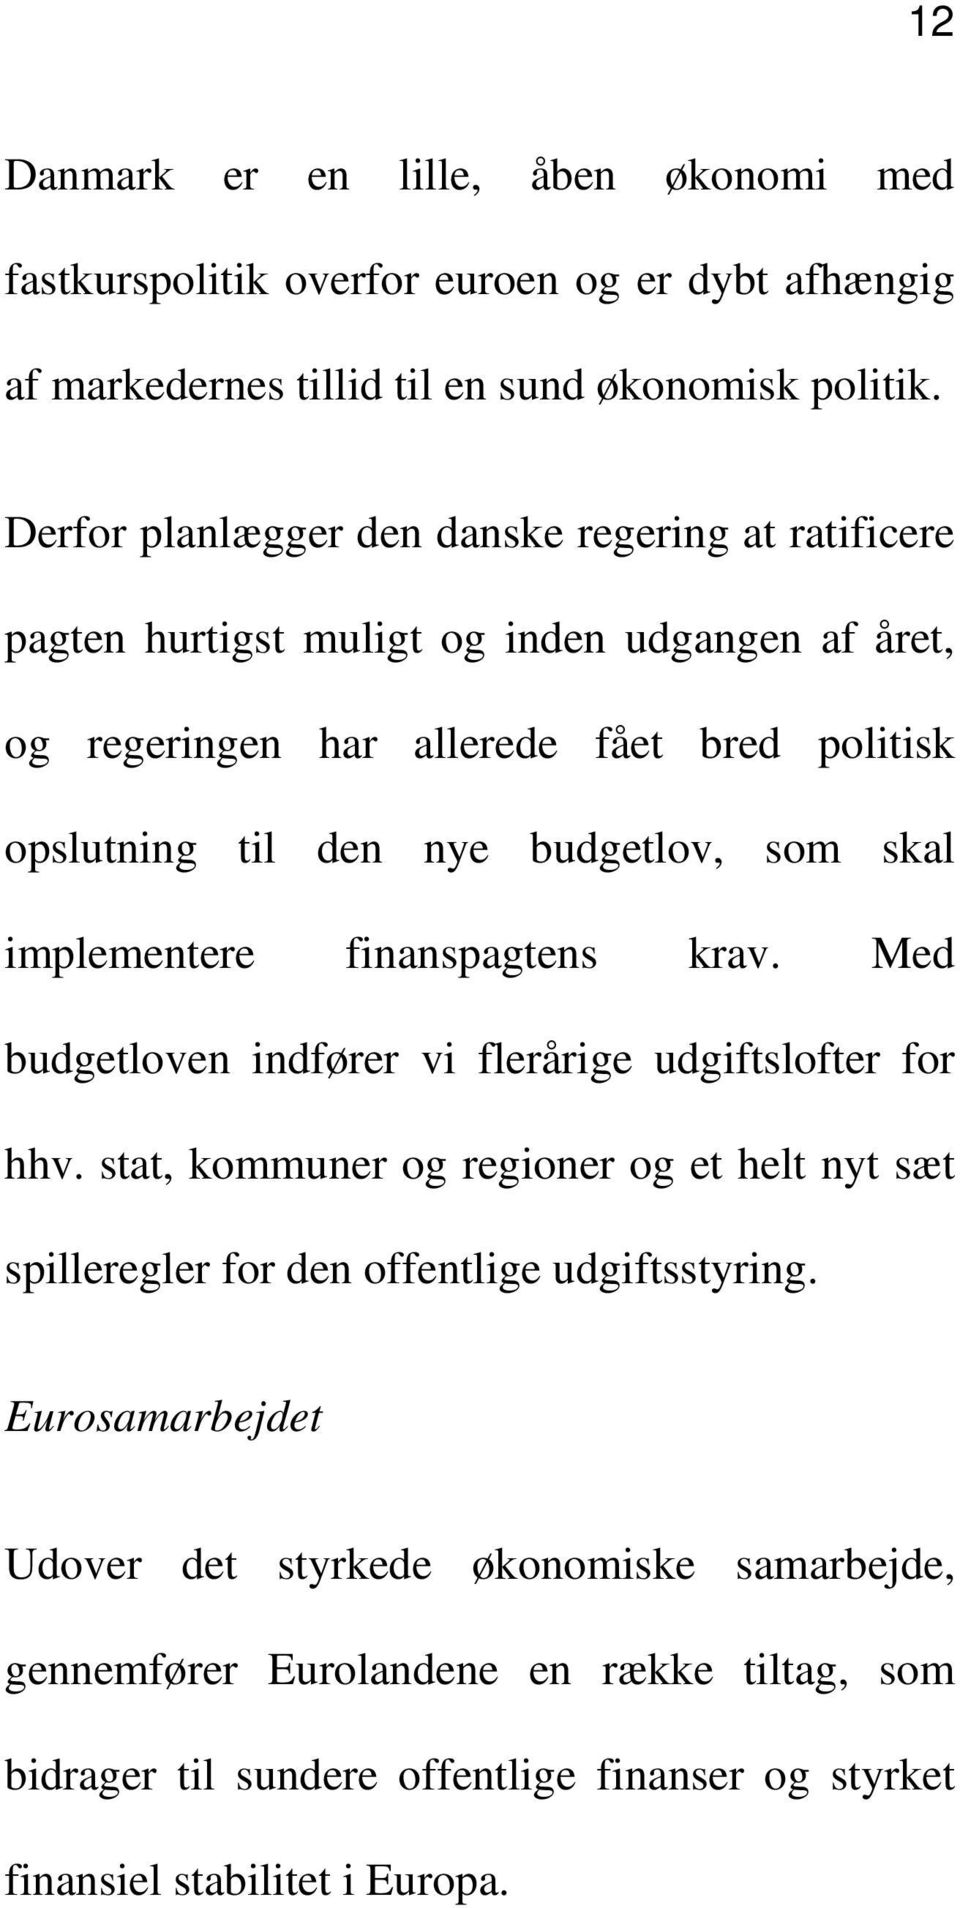 budgetlov, som skal implementere finanspagtens krav. Med budgetloven indfører vi flerårige udgiftslofter for hhv.